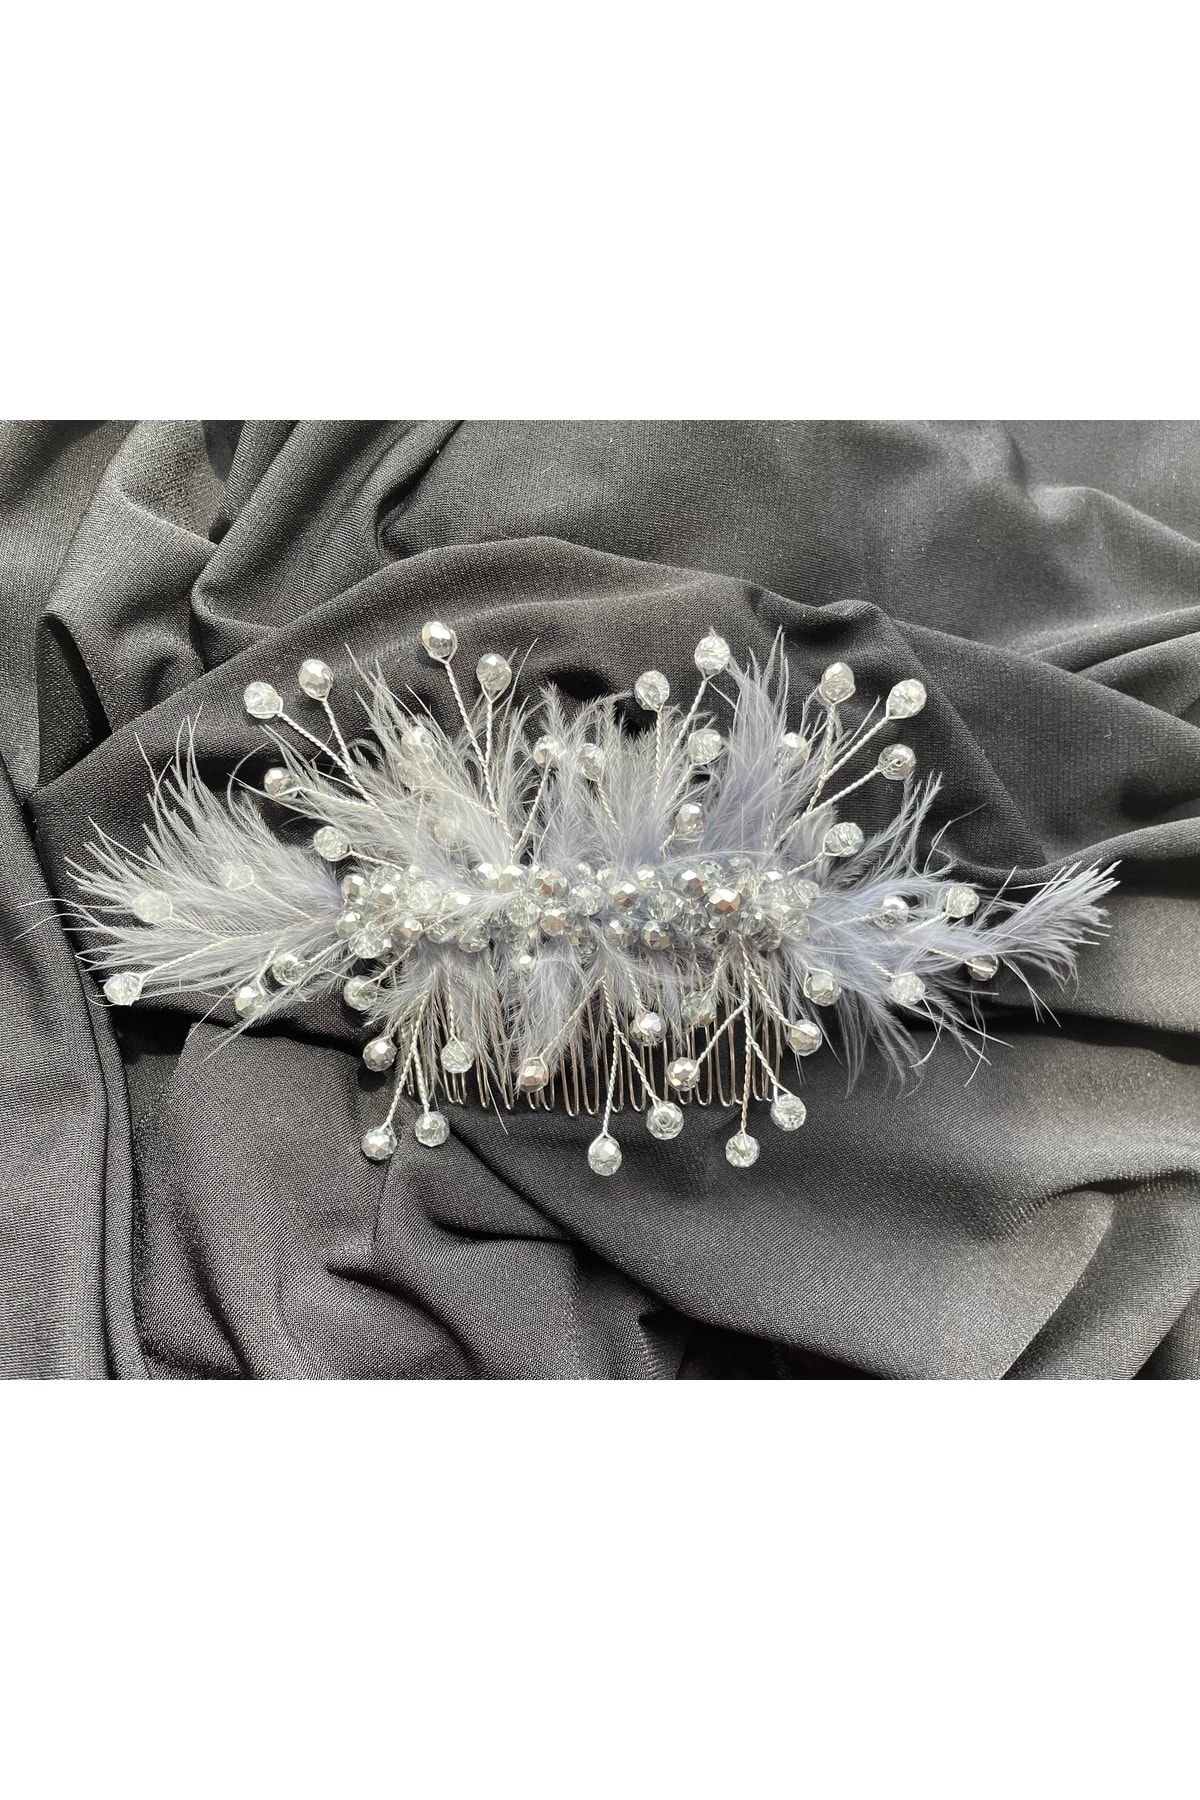 DesaAccessories Gümüş Kristal Taşlı Tüy Detaylı Taraklı Saç Aksesuarı Nişan, Gelin, Düğün Tacı